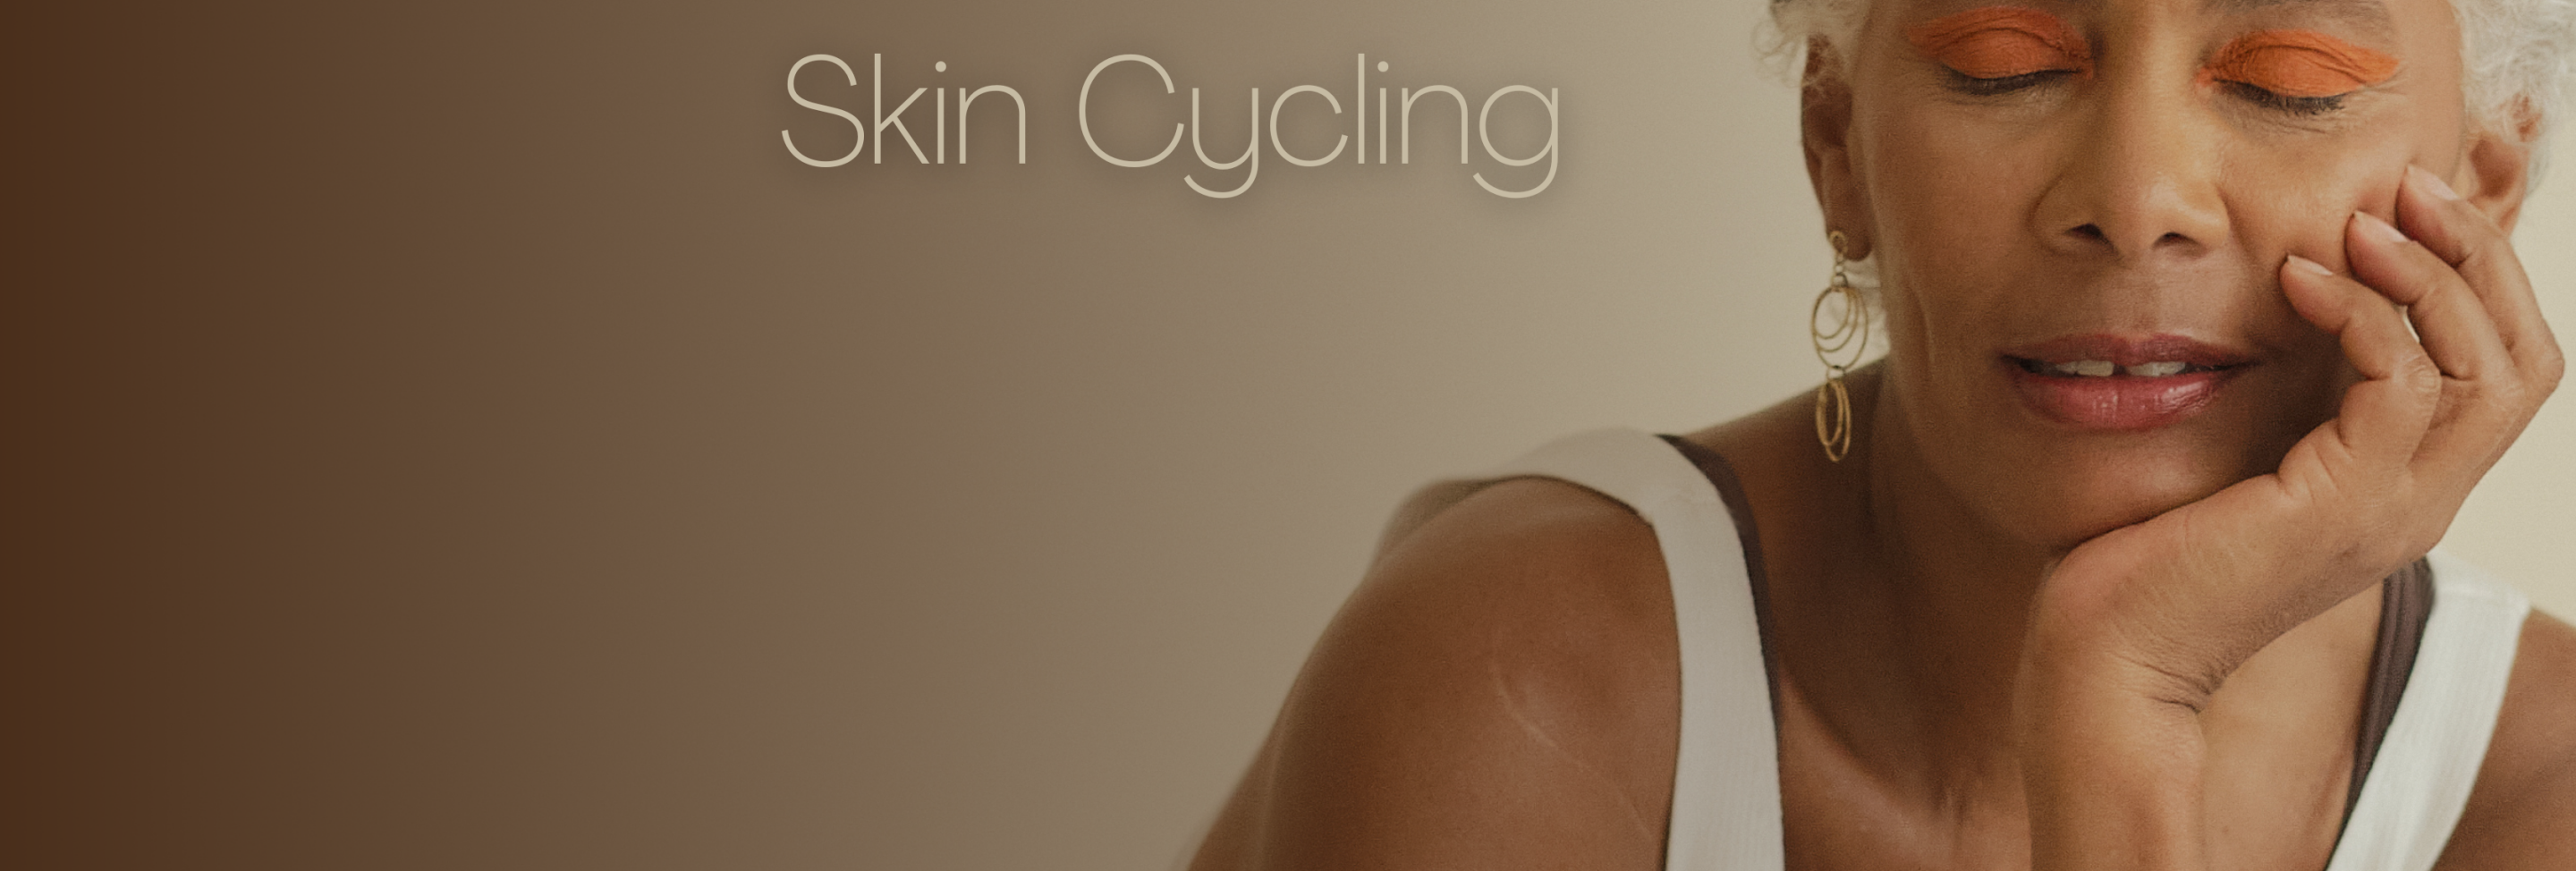 Skin_Cycling_envelhecer_com_a_pele_jovem